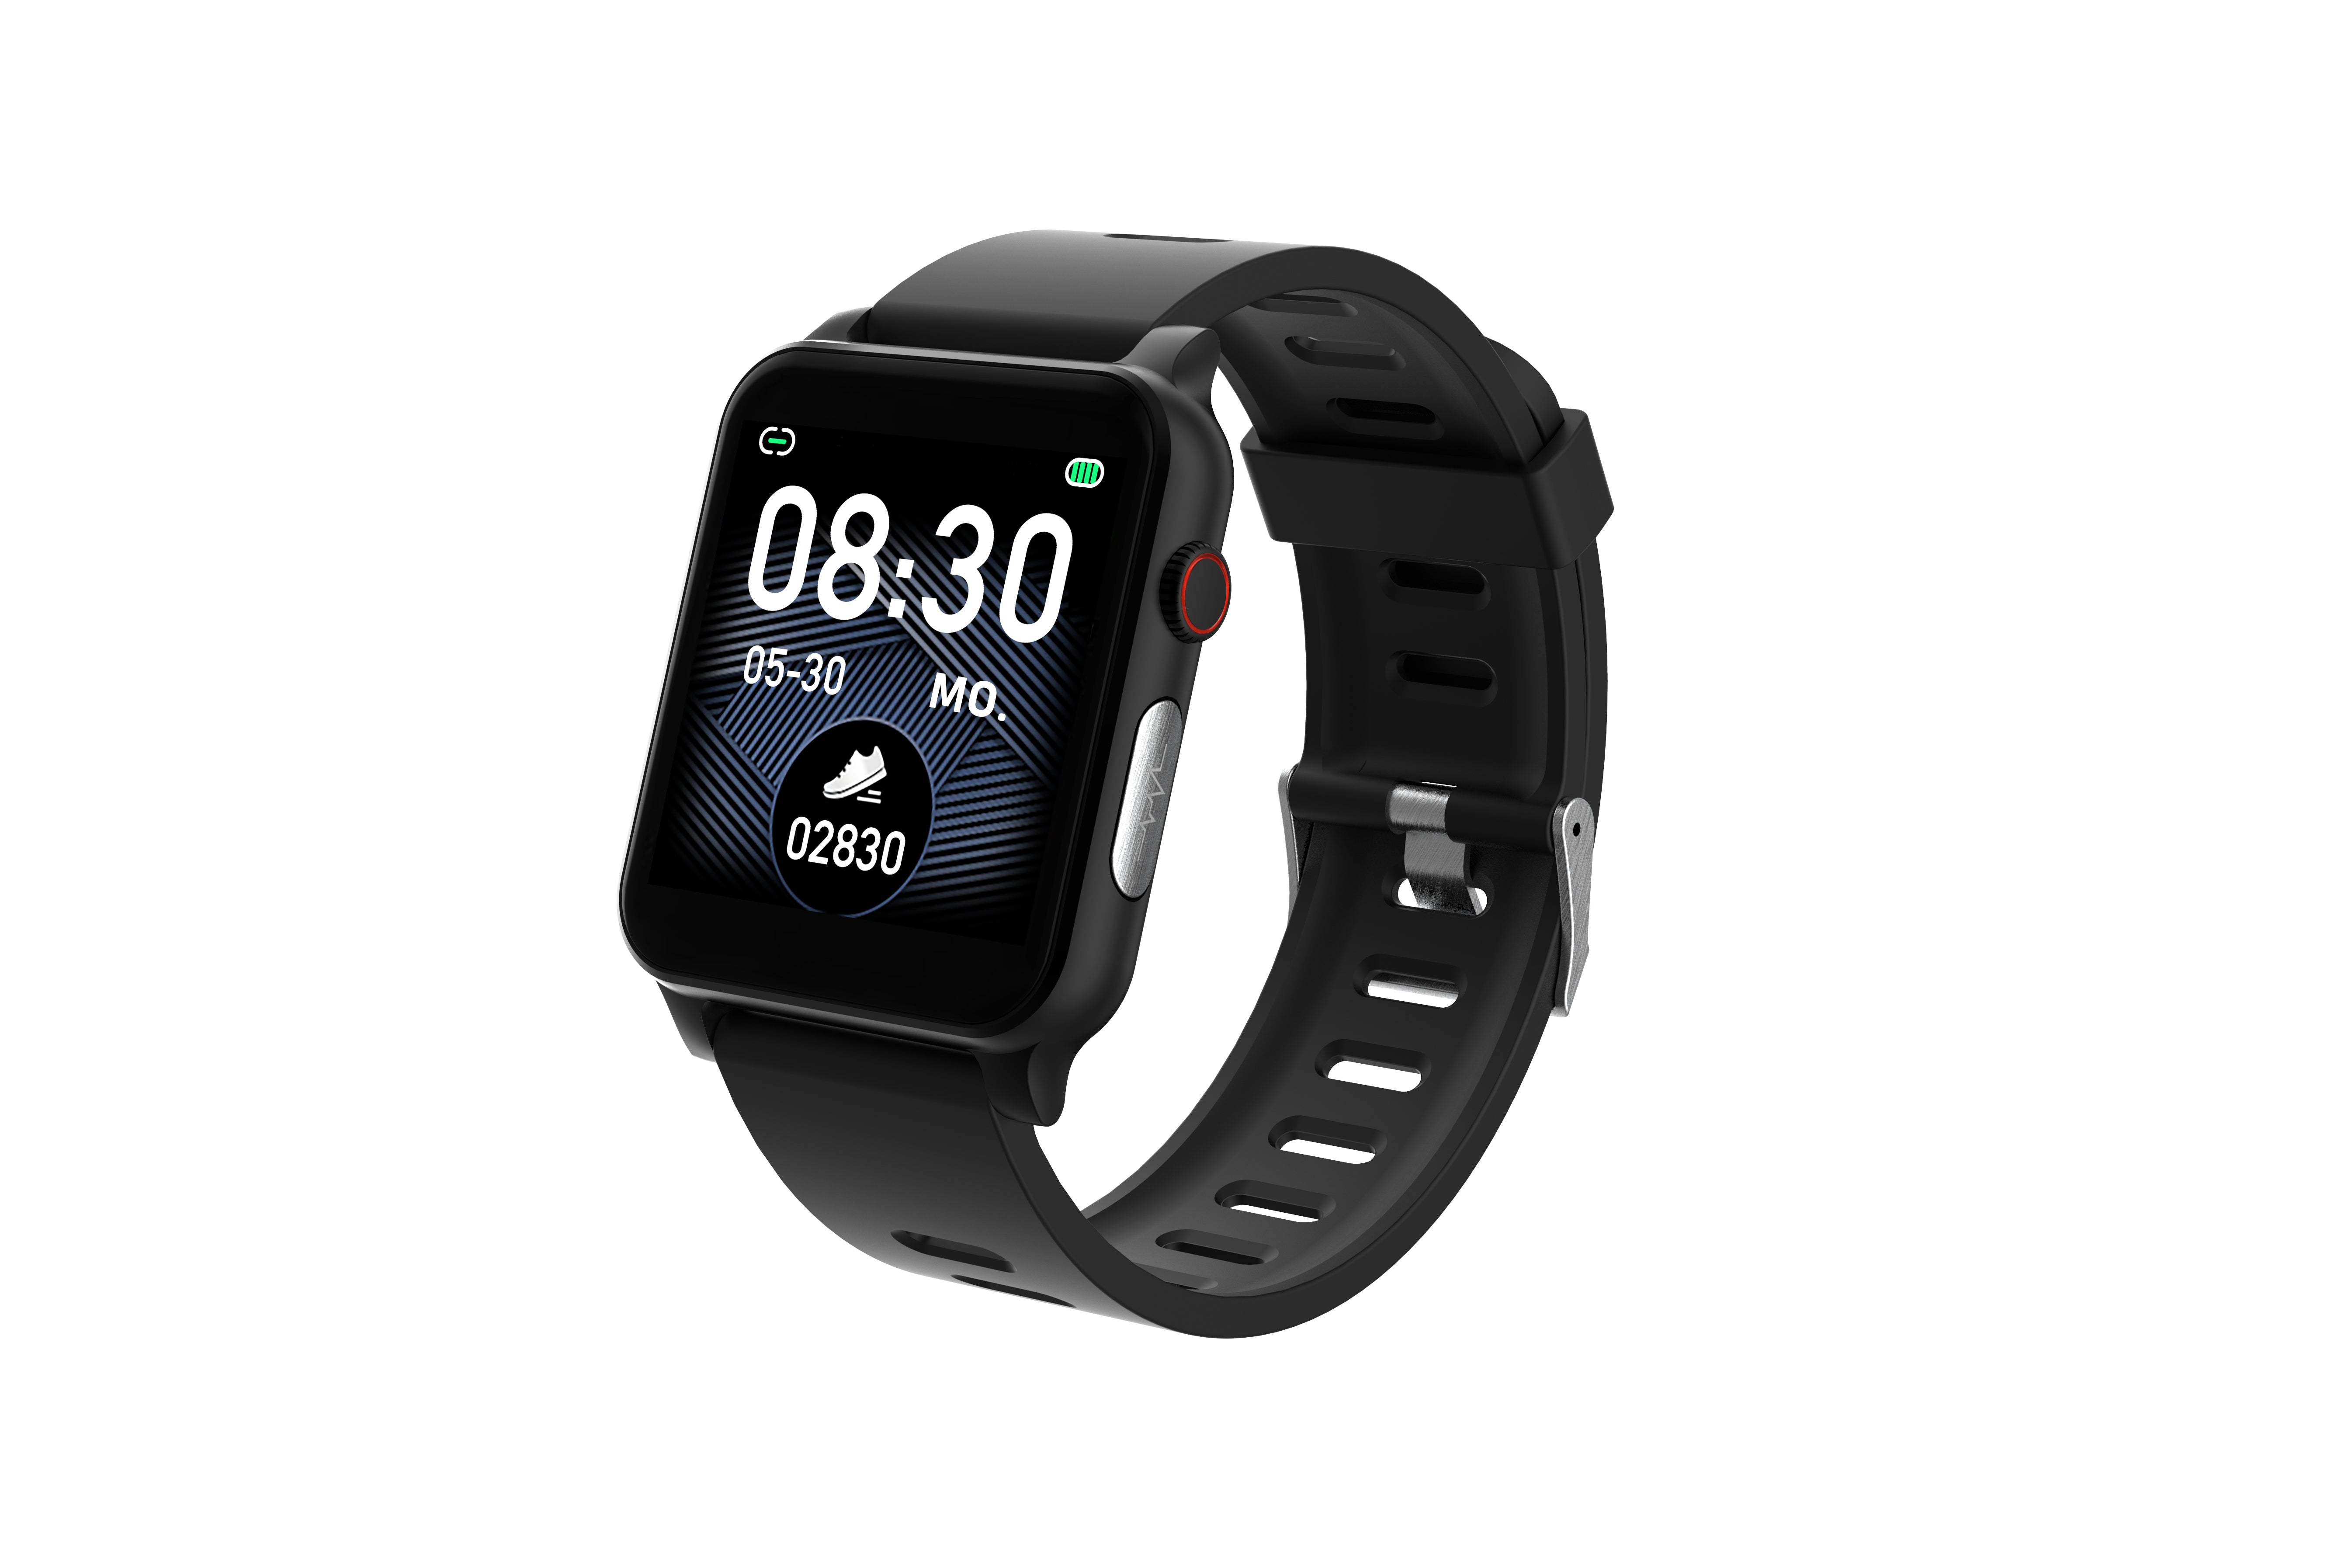 HEYRO FIT 21 Metal Black Smart Watch mit EKG, PPG, Blutdruckmessung, Pulsuhr, Kalorien- & Schrittzähler – mit zusätzlichem schwarzen Metallarmband (Edelstahlgewebe)